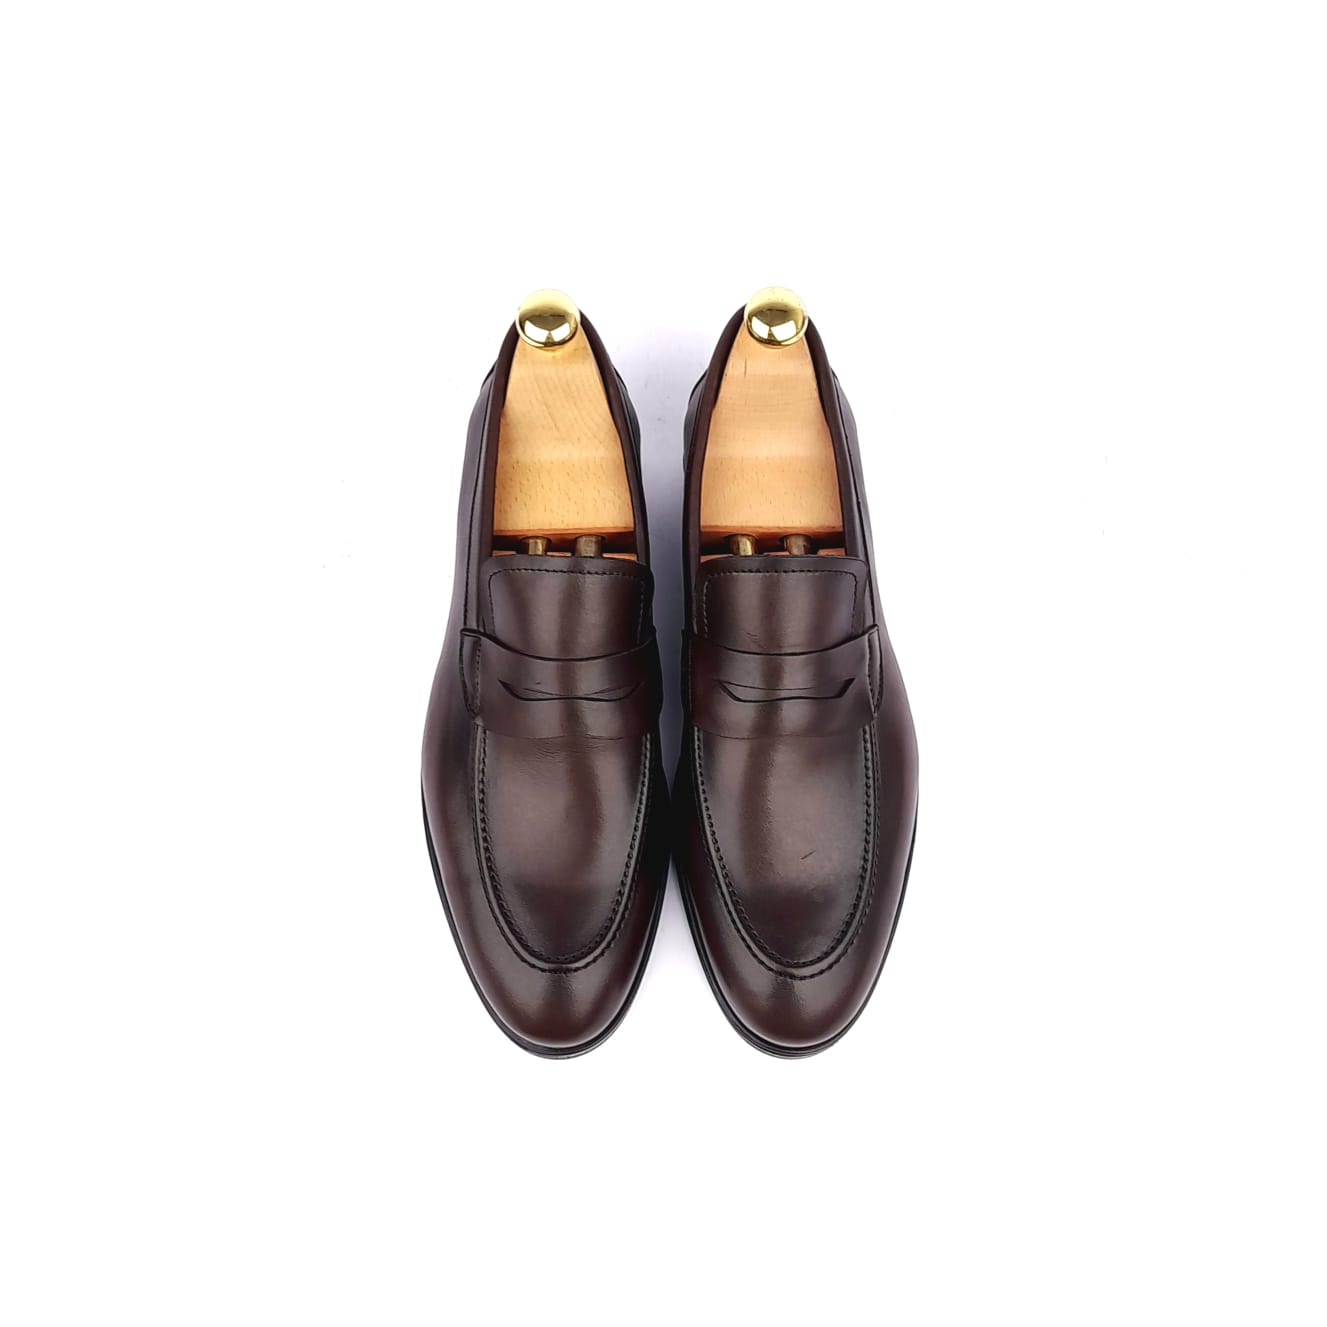 '5106 Chaussure cuir Marron